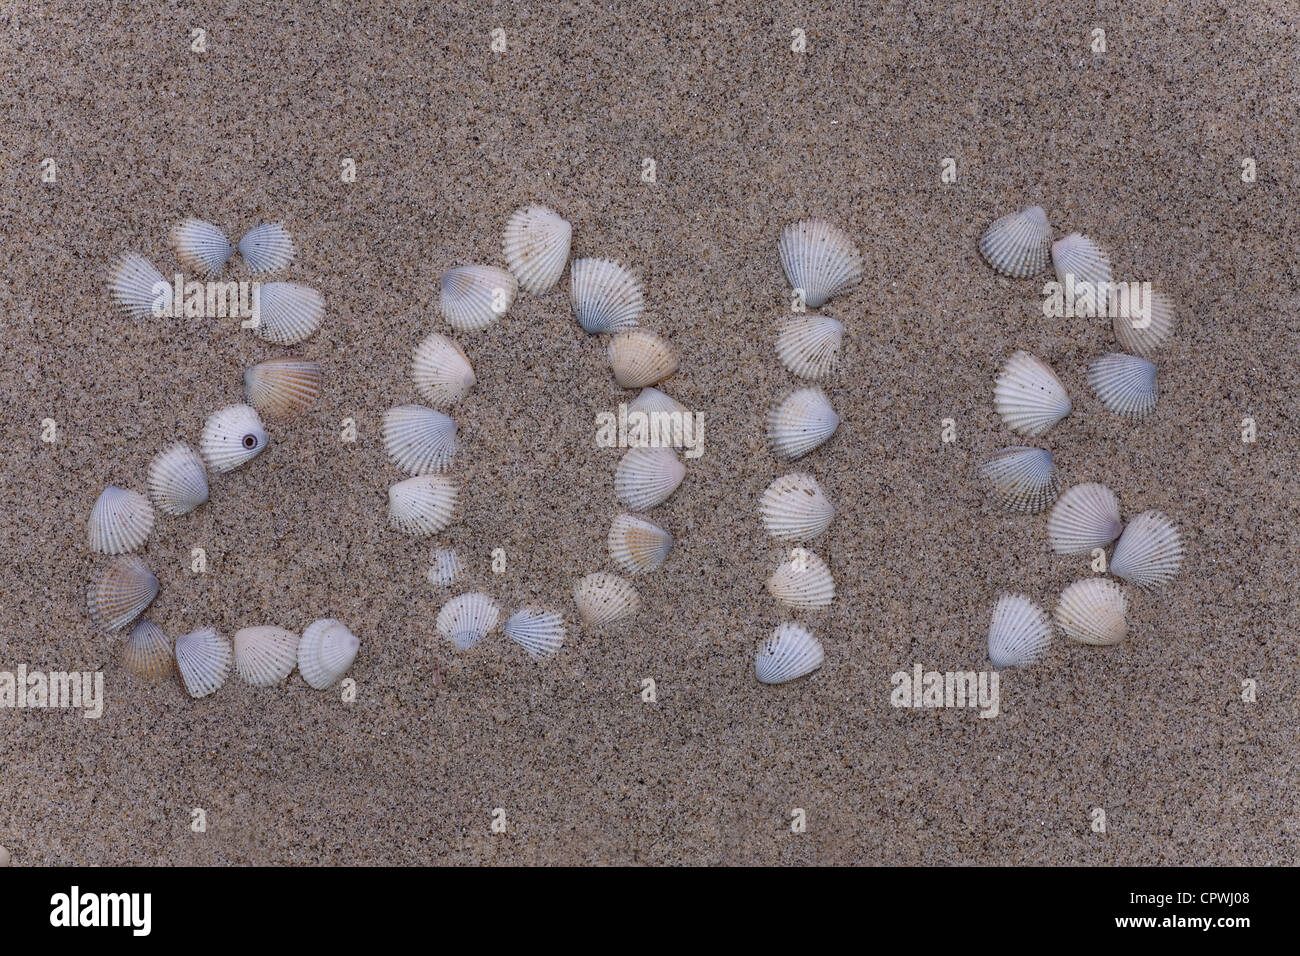 Nuovo anno 2013 numeri di disegni da shell nella sabbia sulla spiaggia Foto Stock